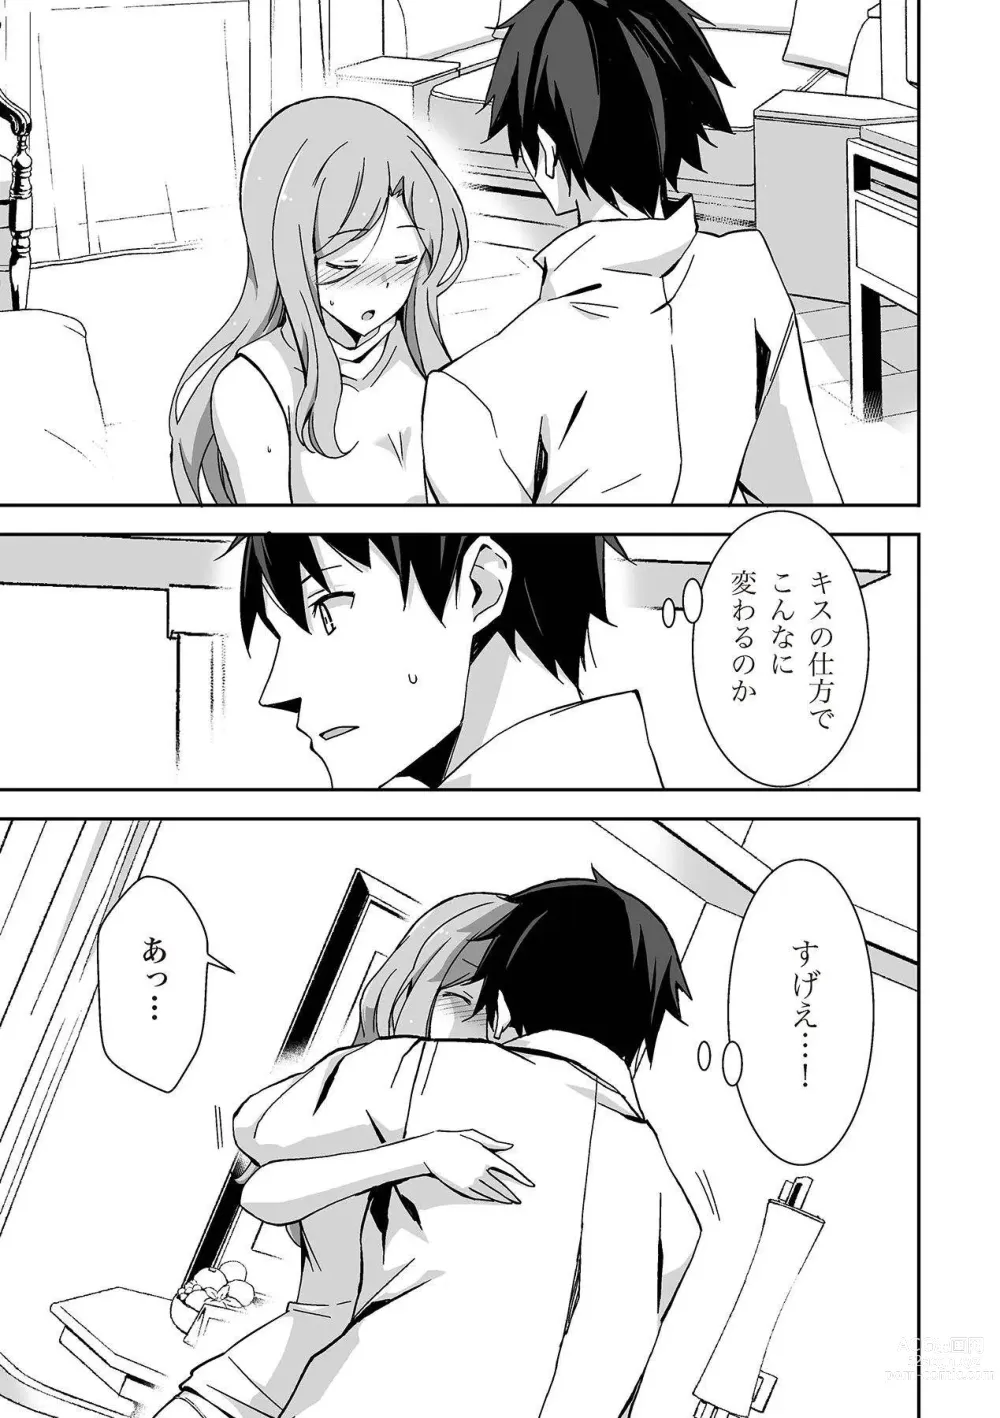 Page 121 of manga 唇と舌の性感開発・キス完全マニュアル イラスト版……とろキス